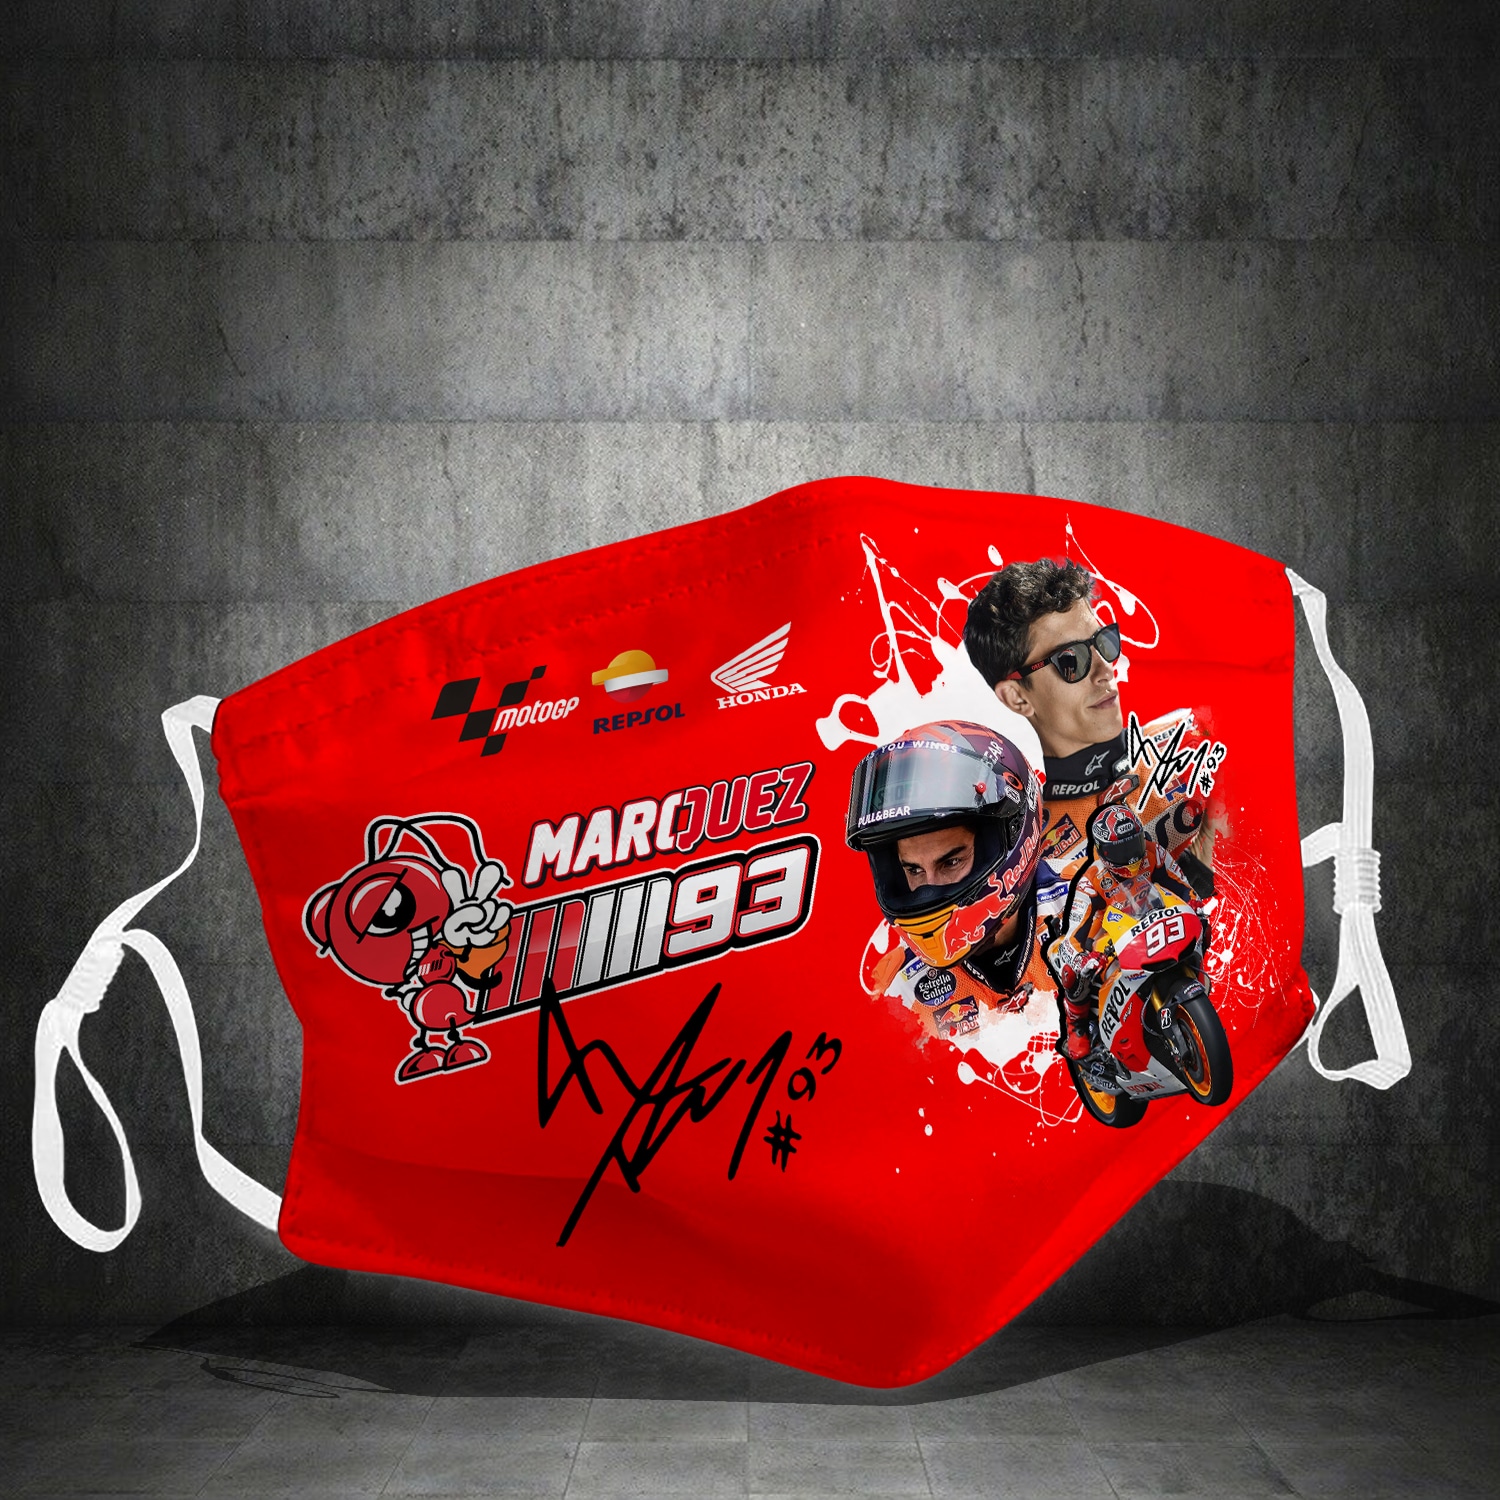 Marc Marquez 93 face mask